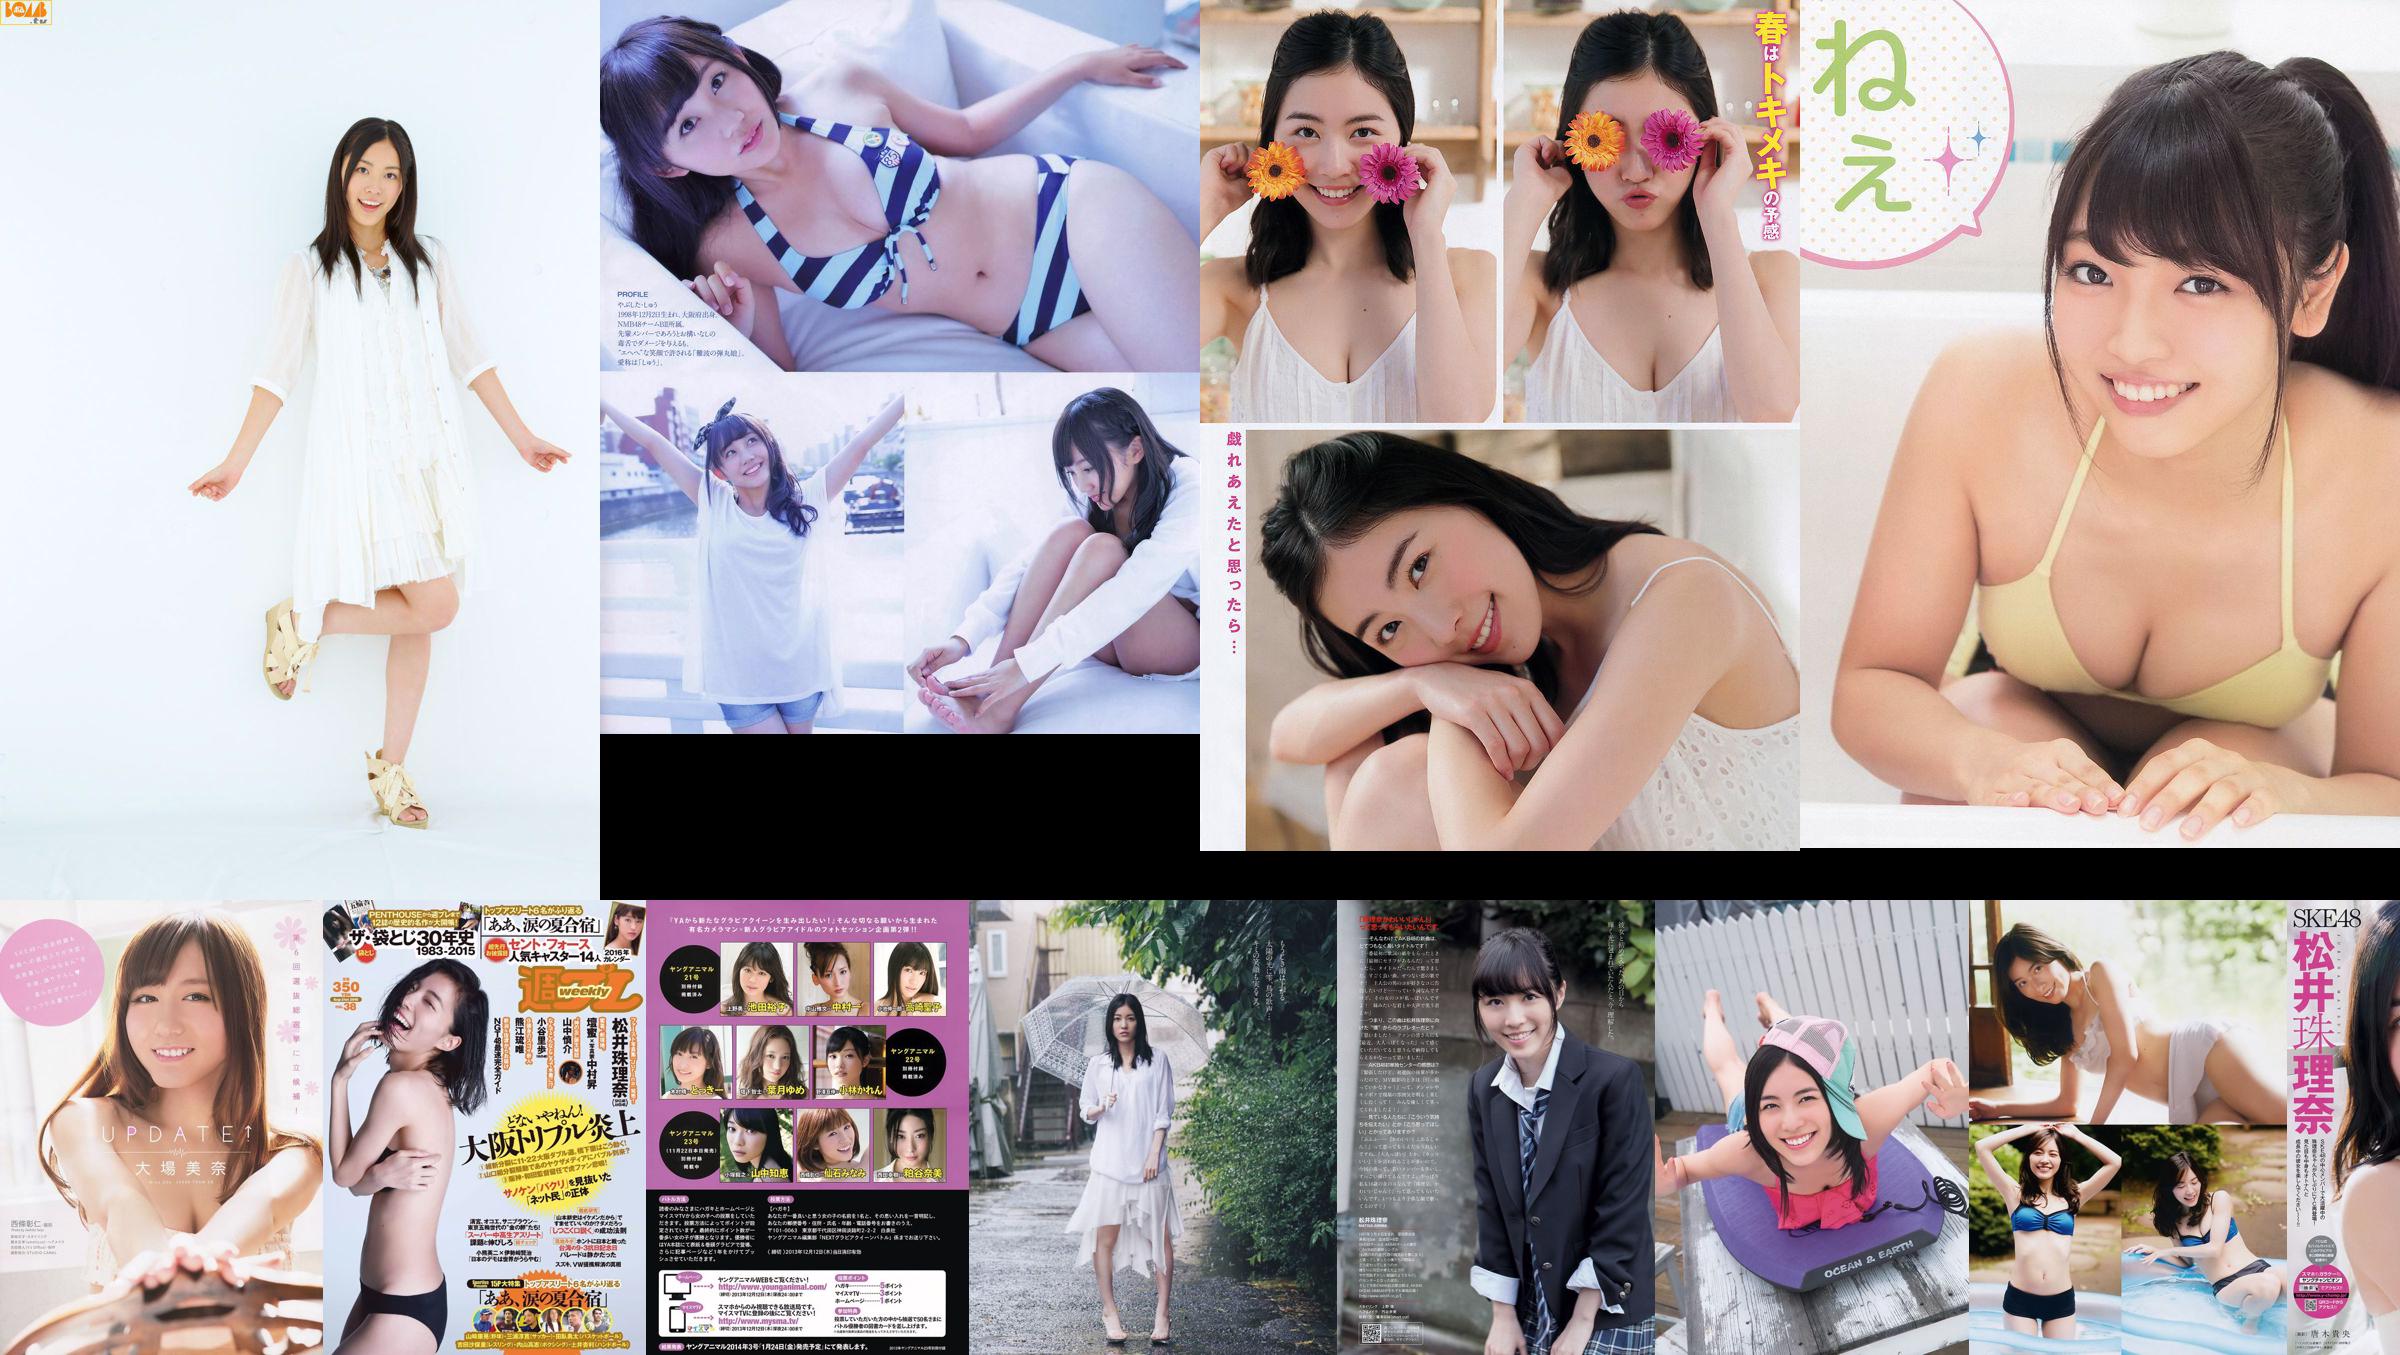 [Weekly Big Comic Spirits] Matsui Jurina 2014 No.02-03 Photo Magazine No.1f1003 Pagina 22